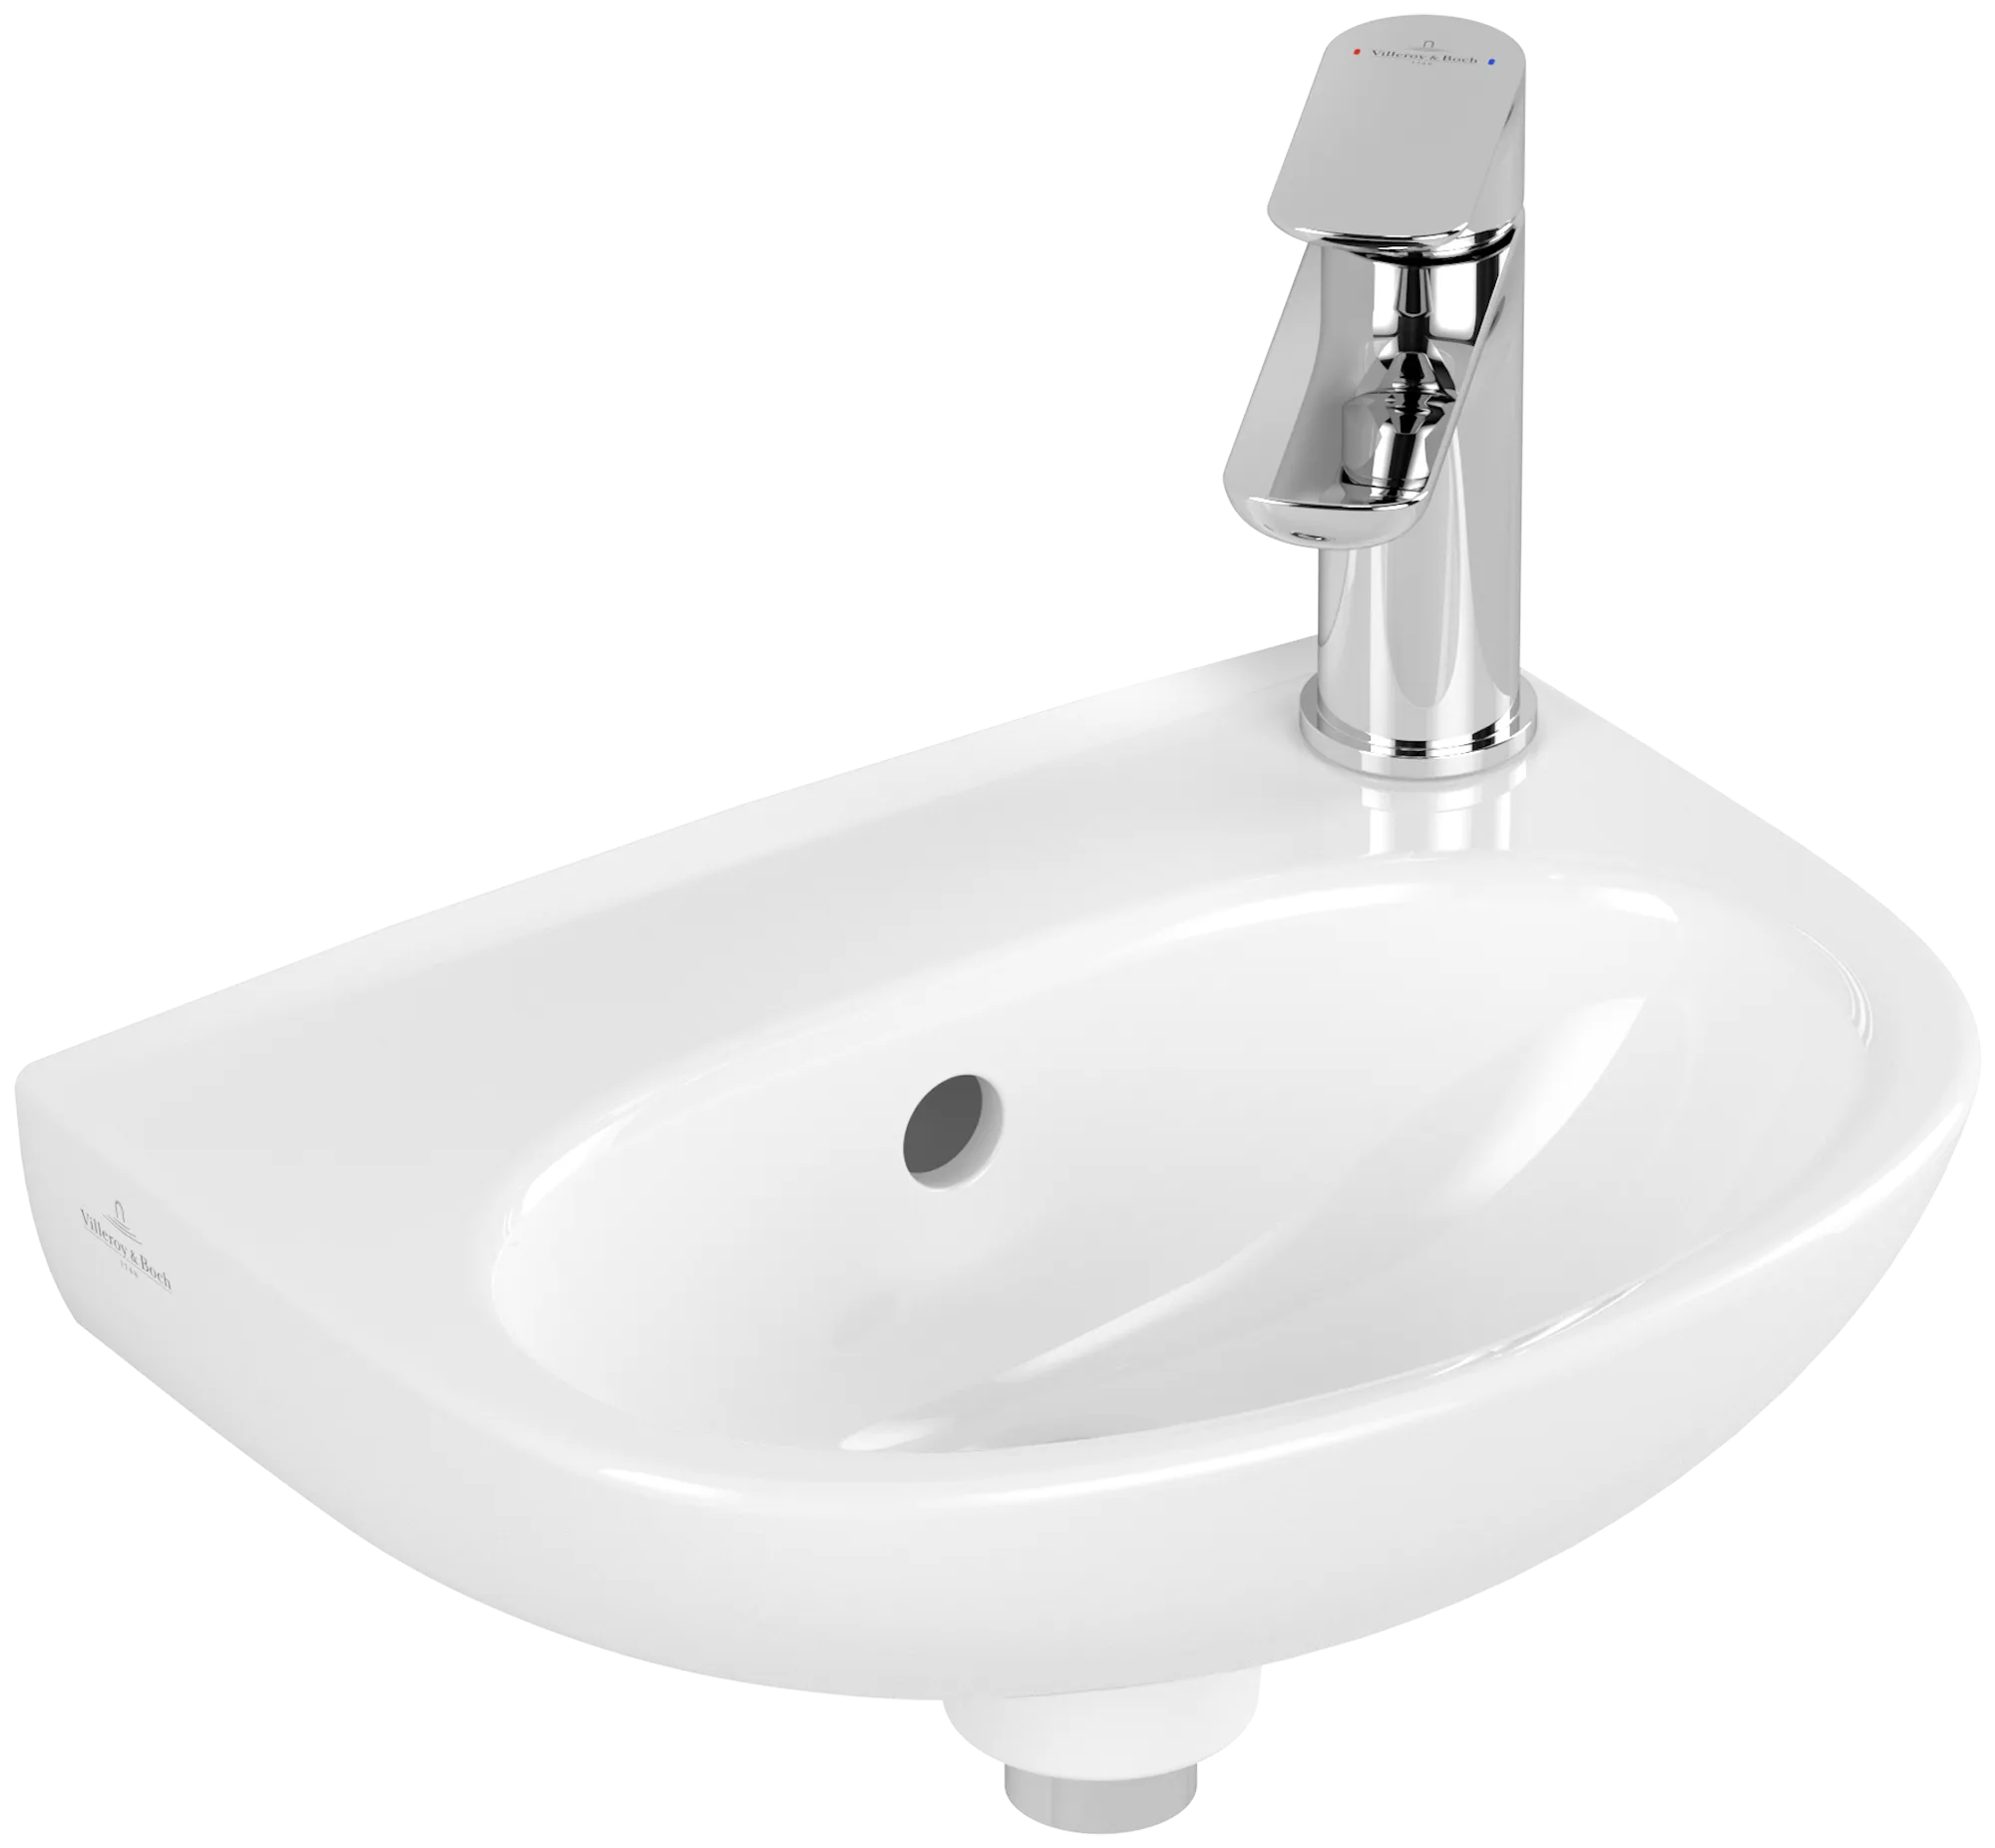 εικόνα του VILLEROY BOCH O.novo Handwashbasin, 360 x 275 x 145 mm, White Alpin, with overflow #43403601